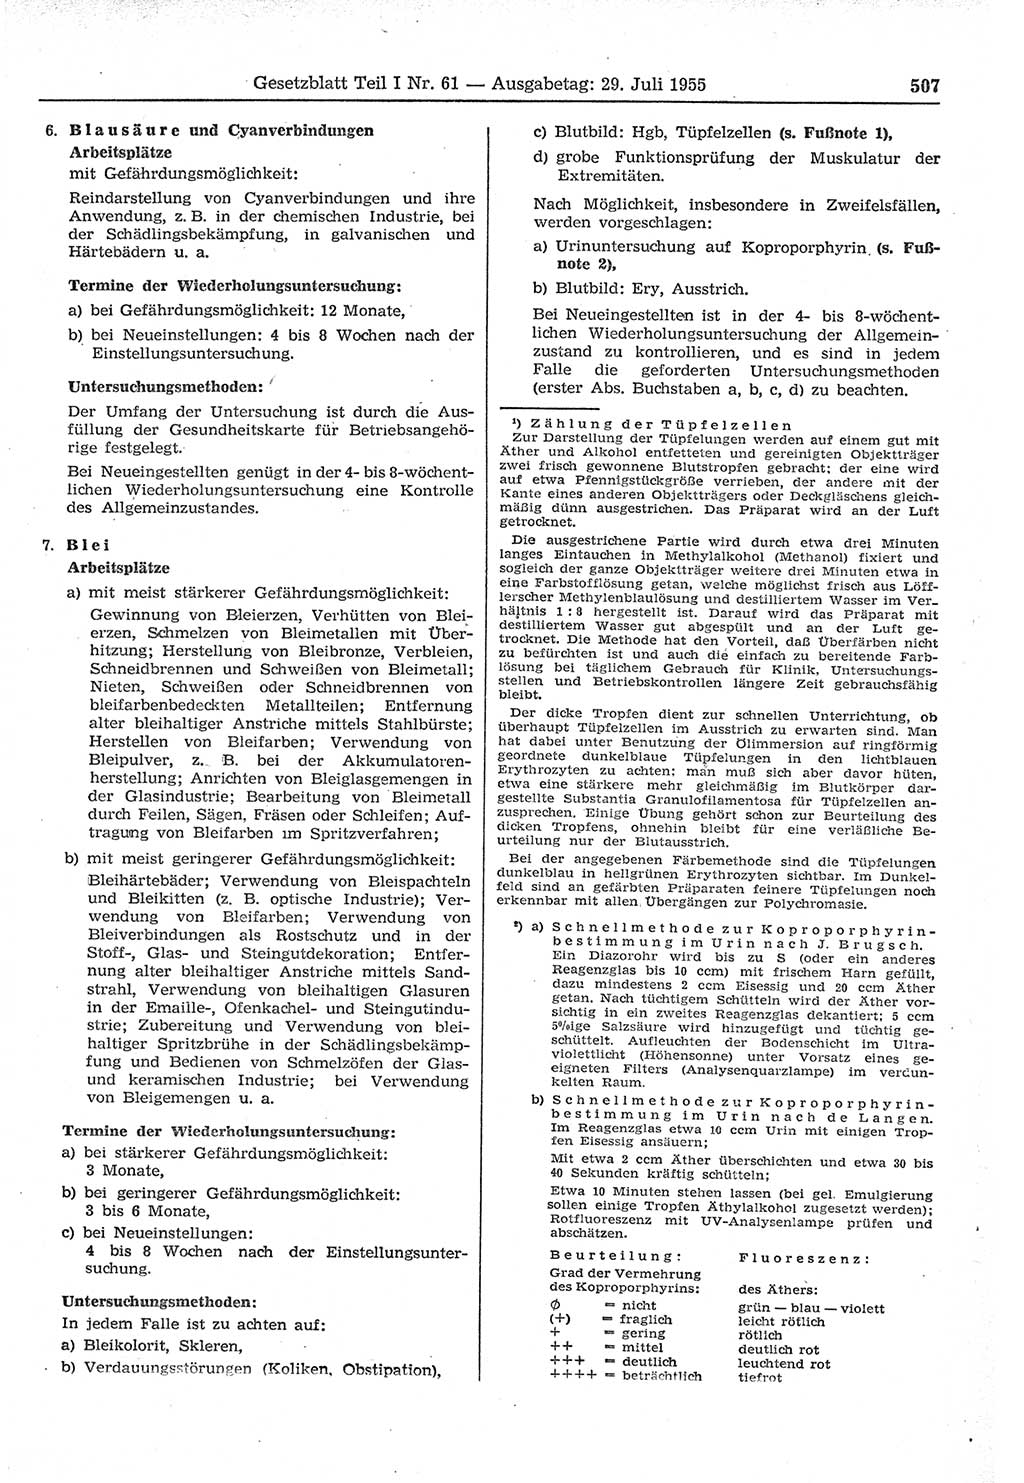 Gesetzblatt (GBl.) der Deutschen Demokratischen Republik (DDR) Teil Ⅰ 1955, Seite 507 (GBl. DDR Ⅰ 1955, S. 507)